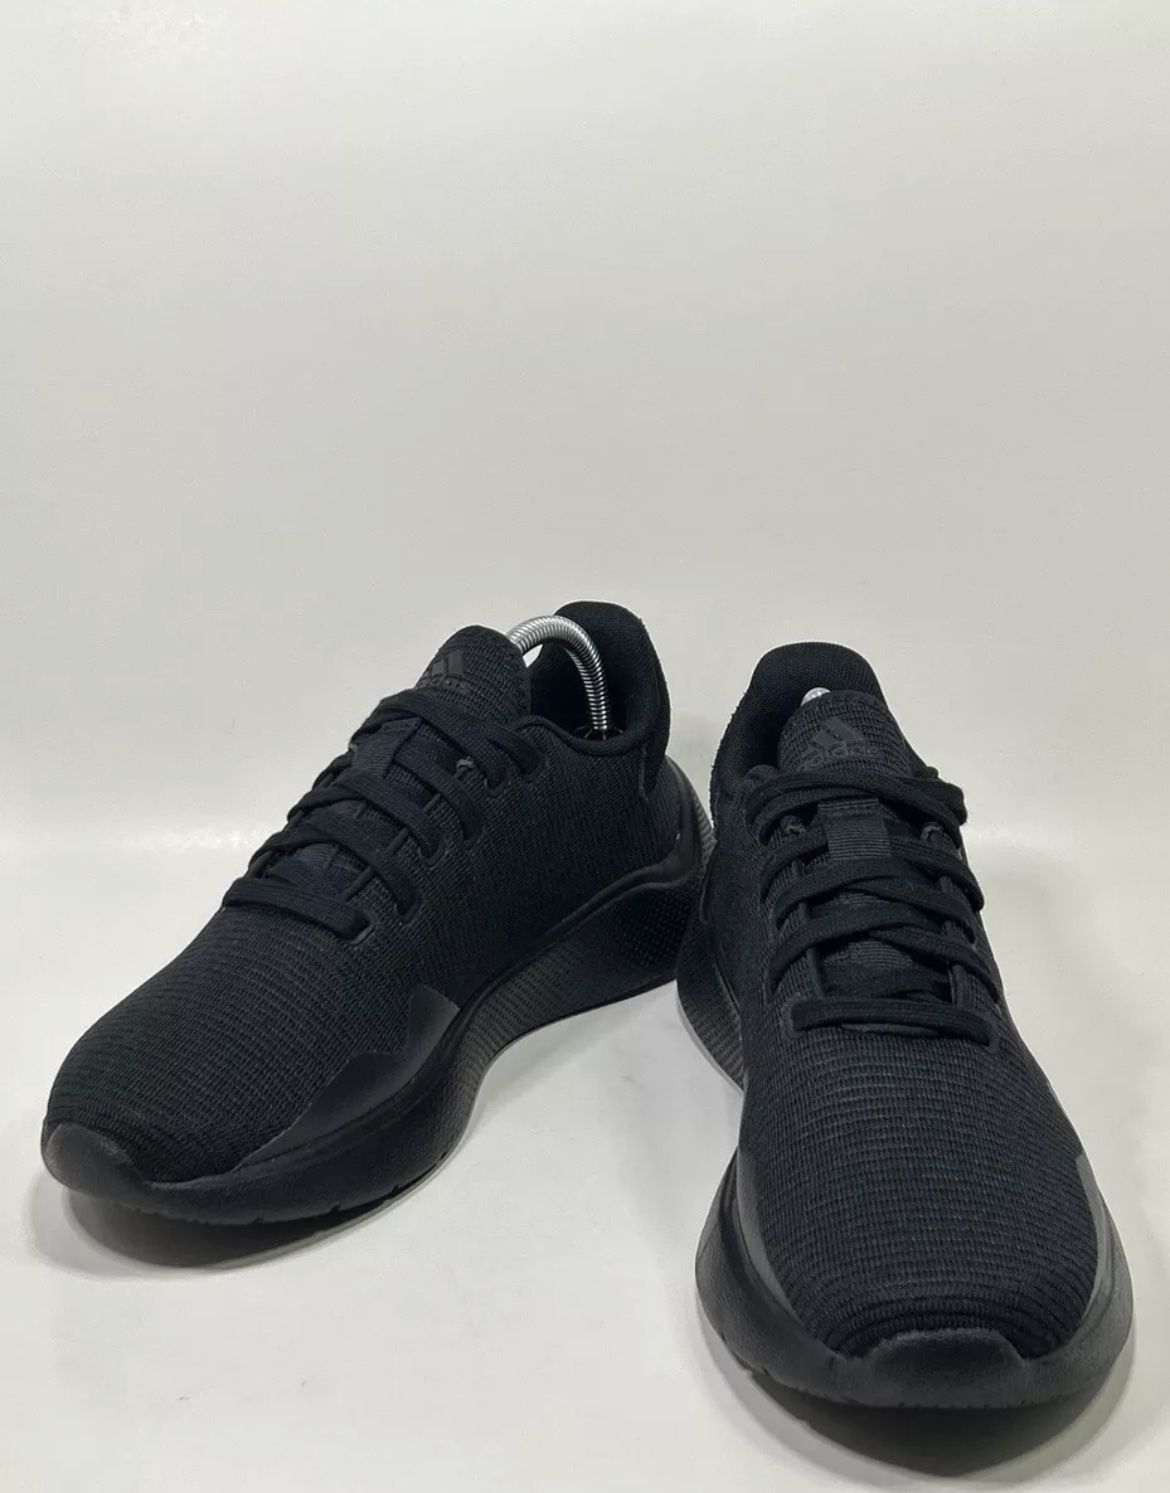 Size 9.5 - Women’s Adidas Neo Puremotion 2.0 ‘Black’ Shoes HQ1720 Men’s 8